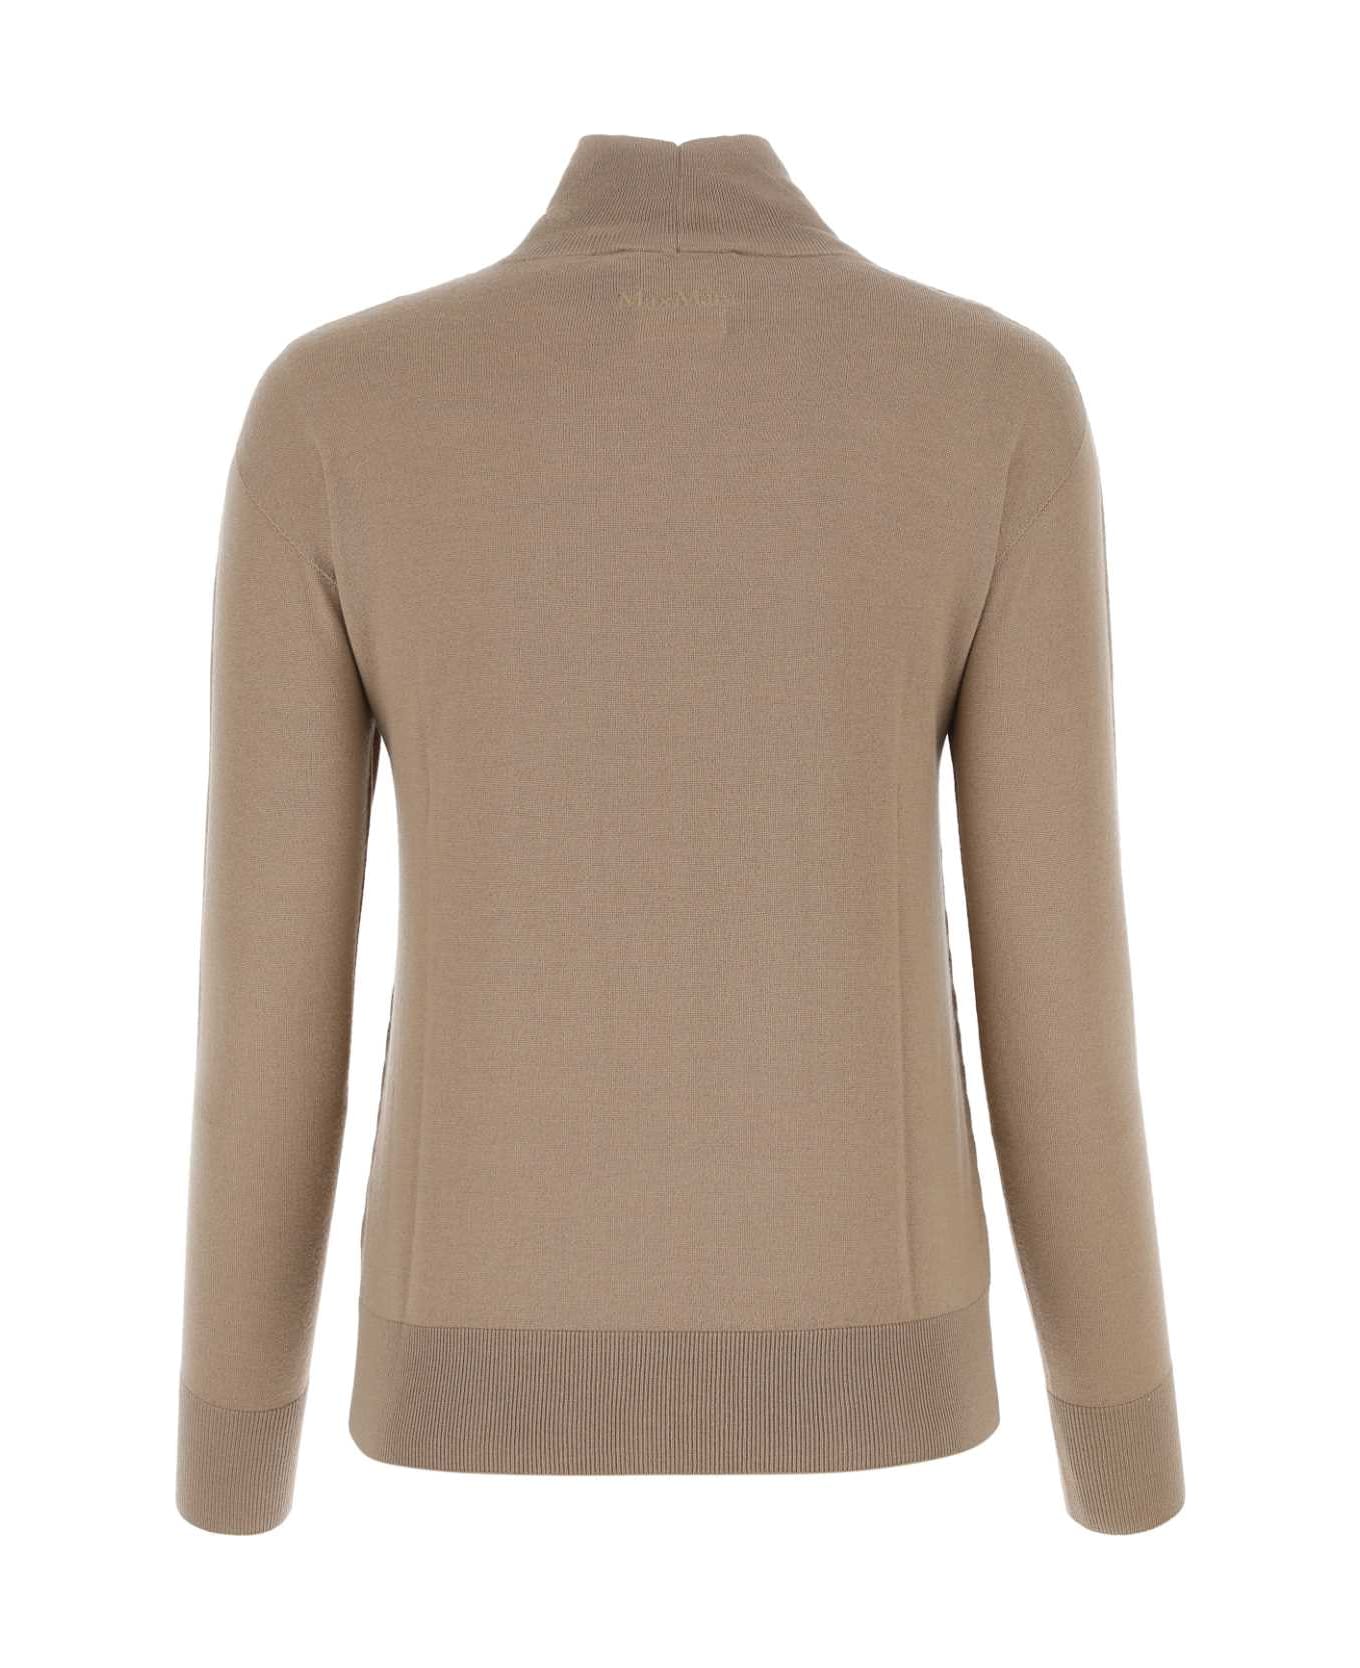 'S Max Mara Wool Blend Sweater - 003